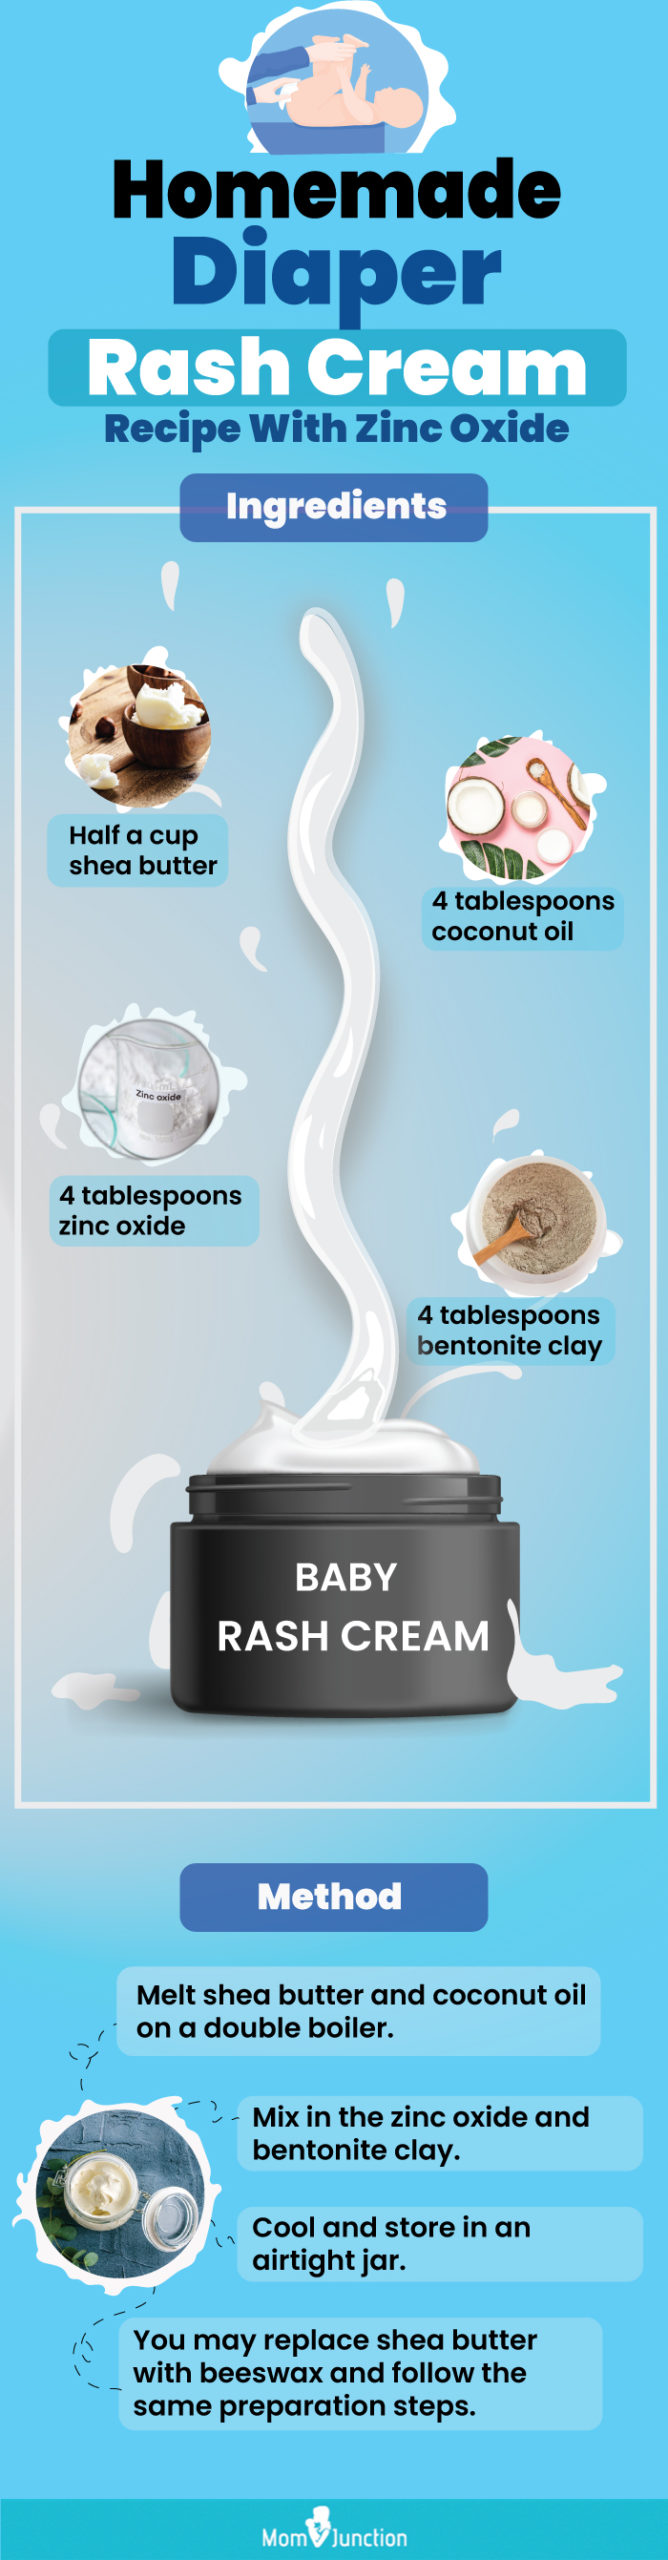 homemade diaper rash cream recipe with zinc oxide [infographic]